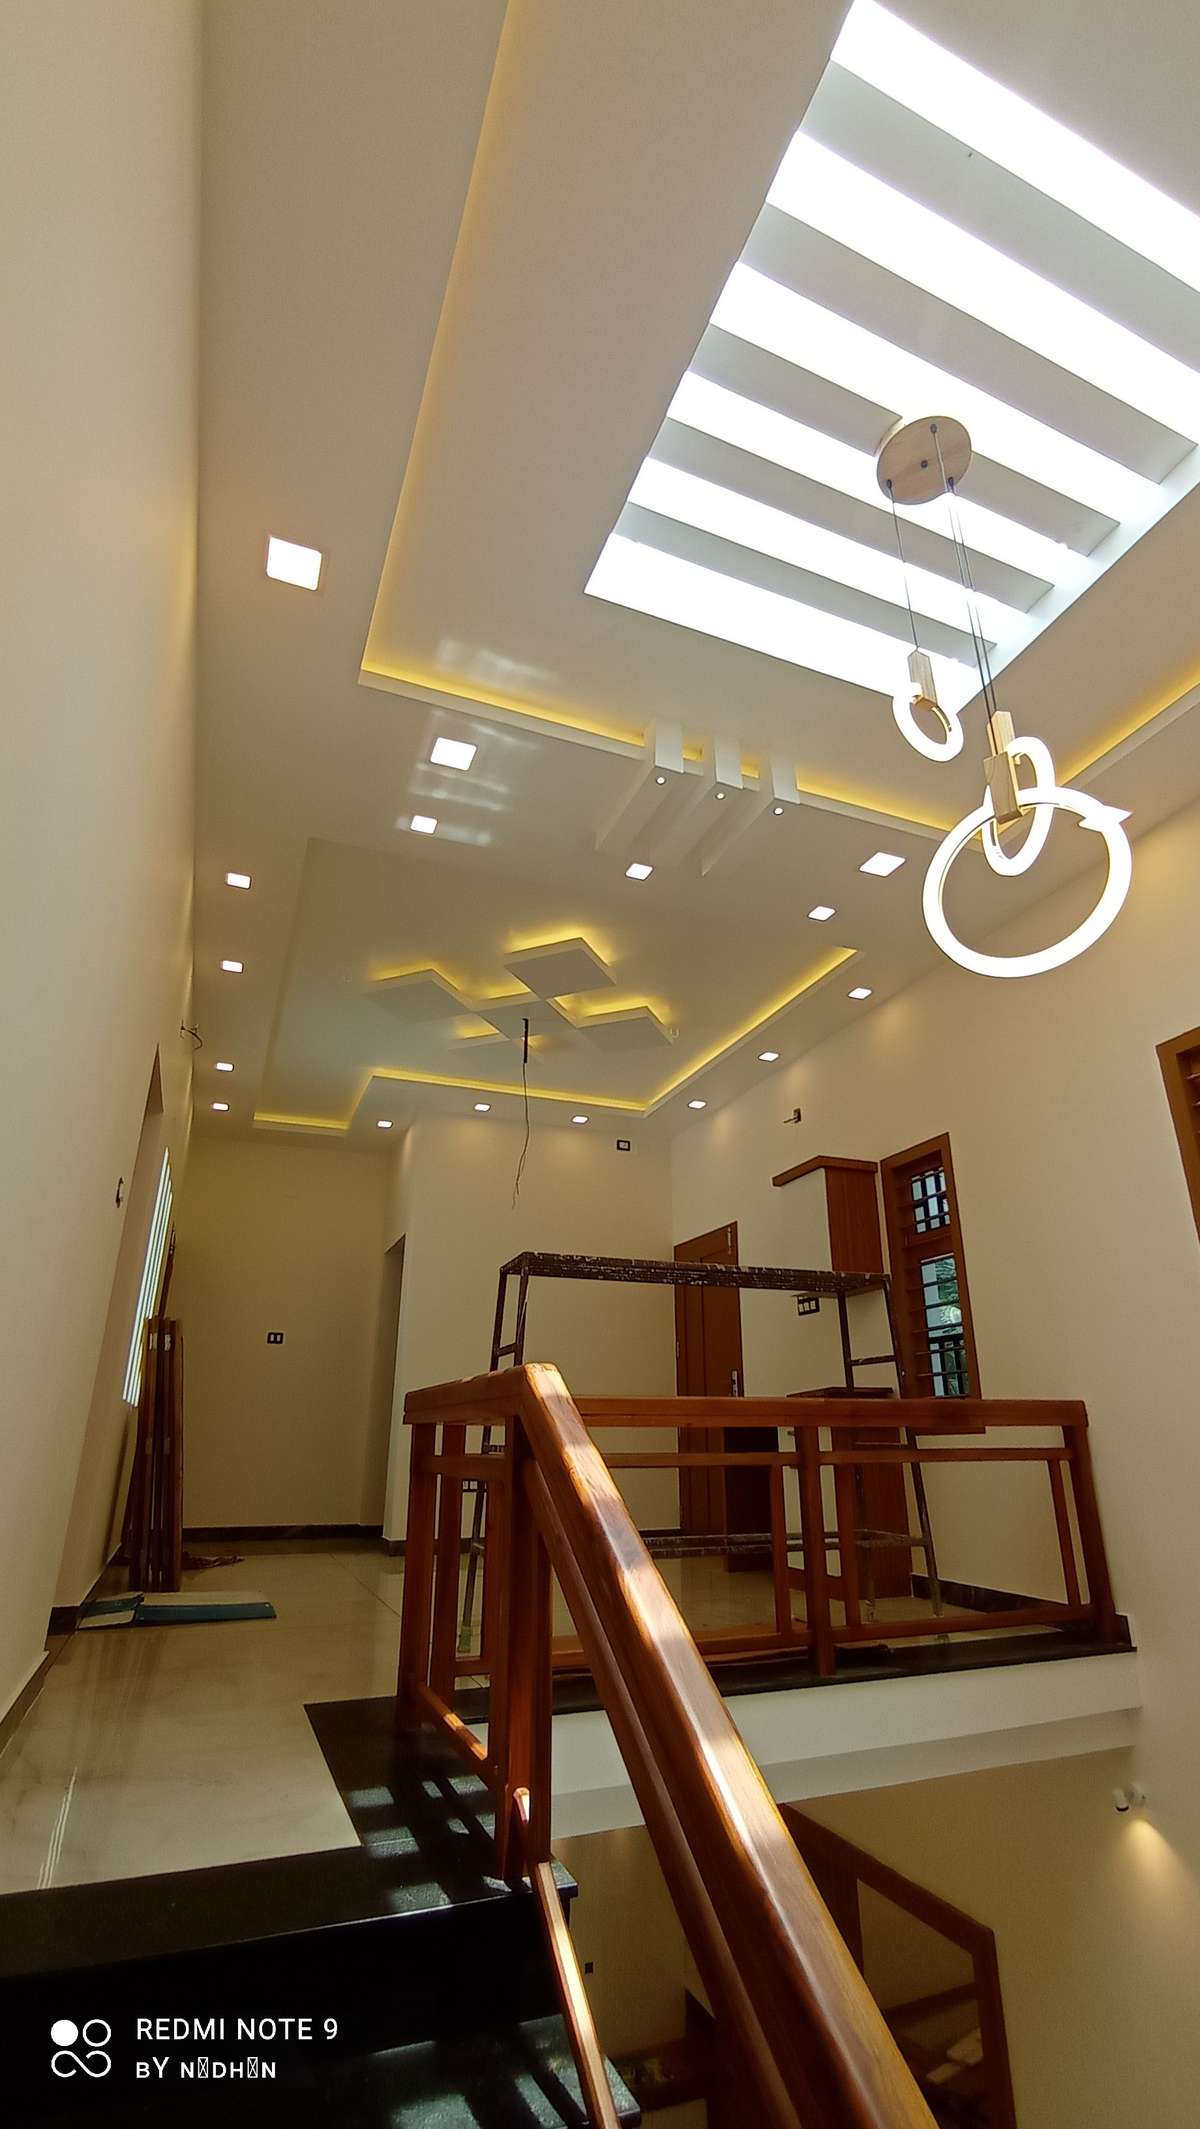 Lighting, Ceiling Designs by Civil Engineer Nidhin cv, Thrissur | Kolo